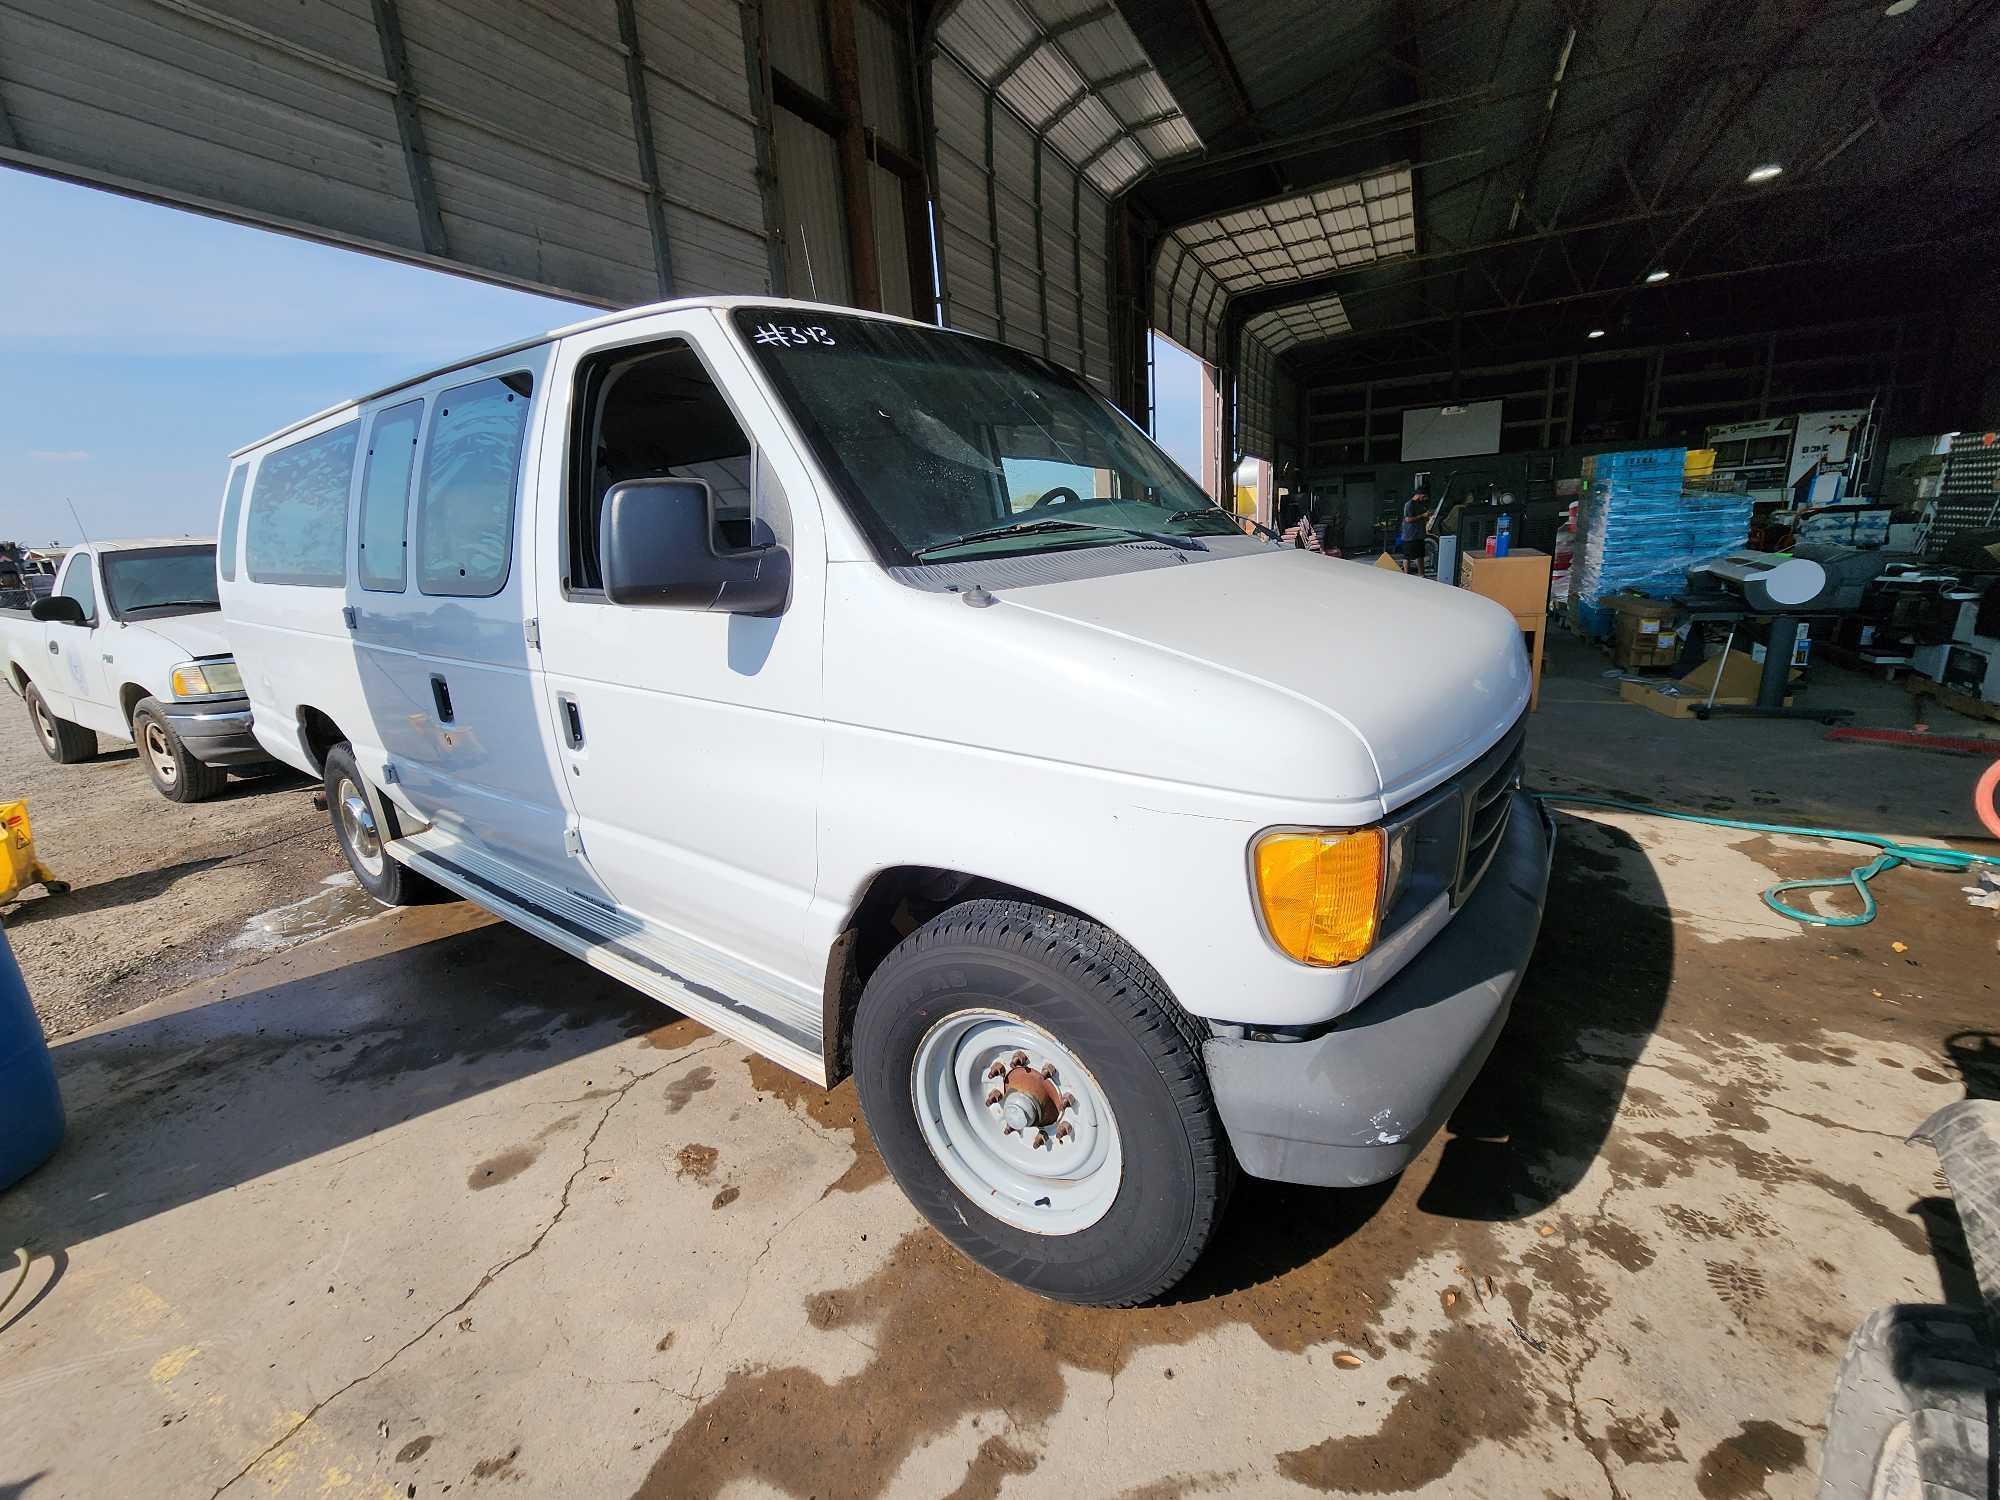 2003 Ford Econoline Wagon Van, VIN # 1FBSS31L43HA69846